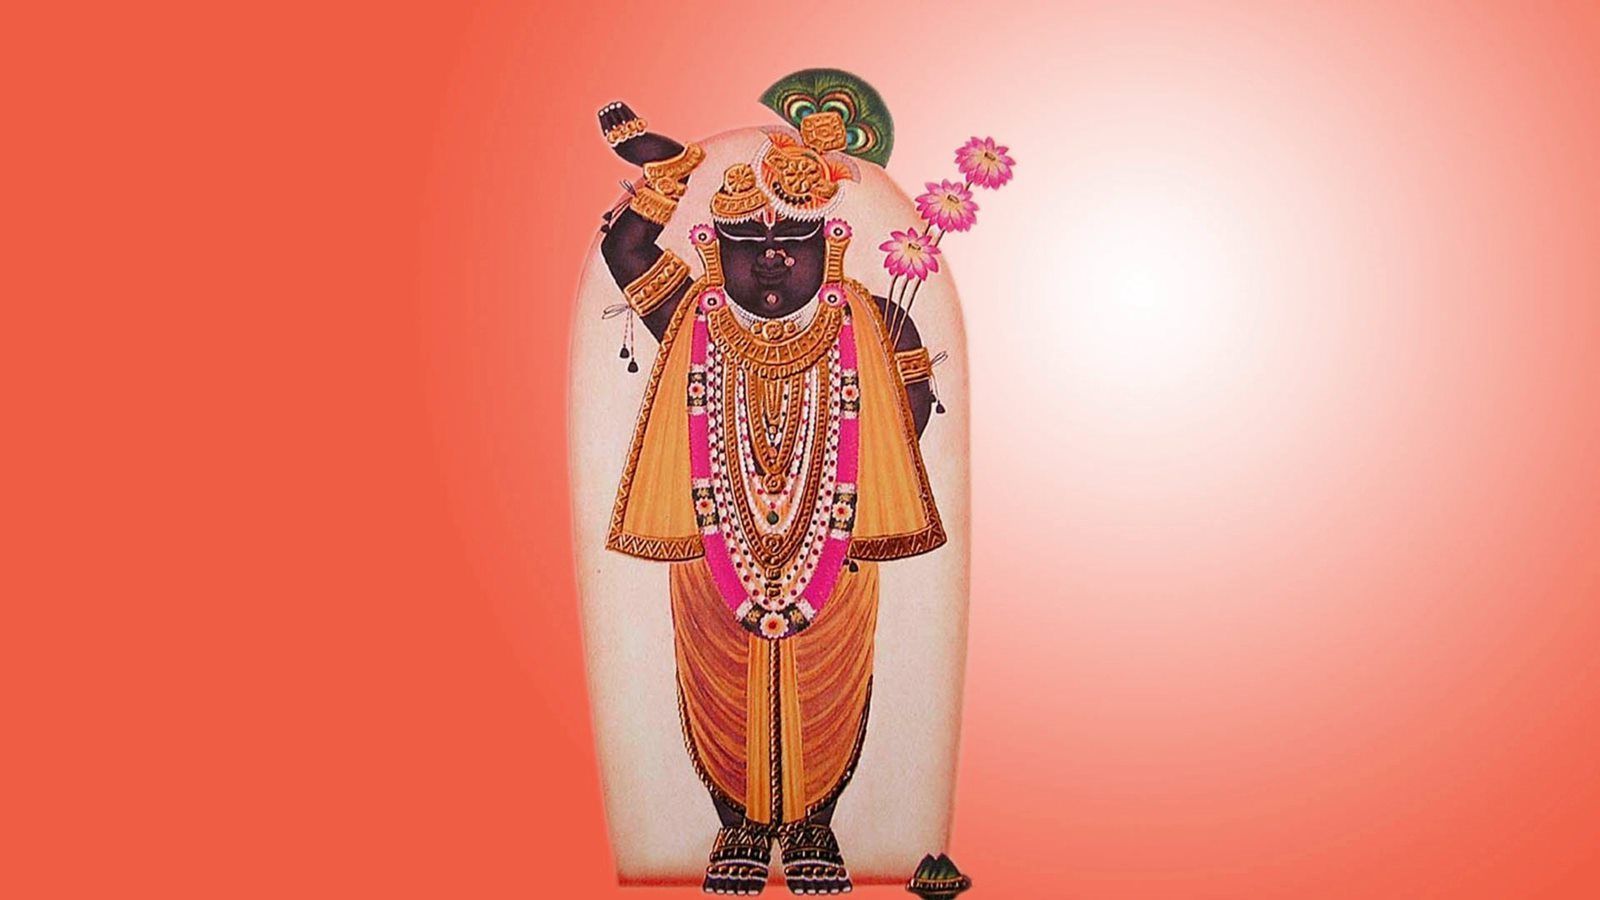 100+] Shrinathji Wallpapers | Wallpapers.com